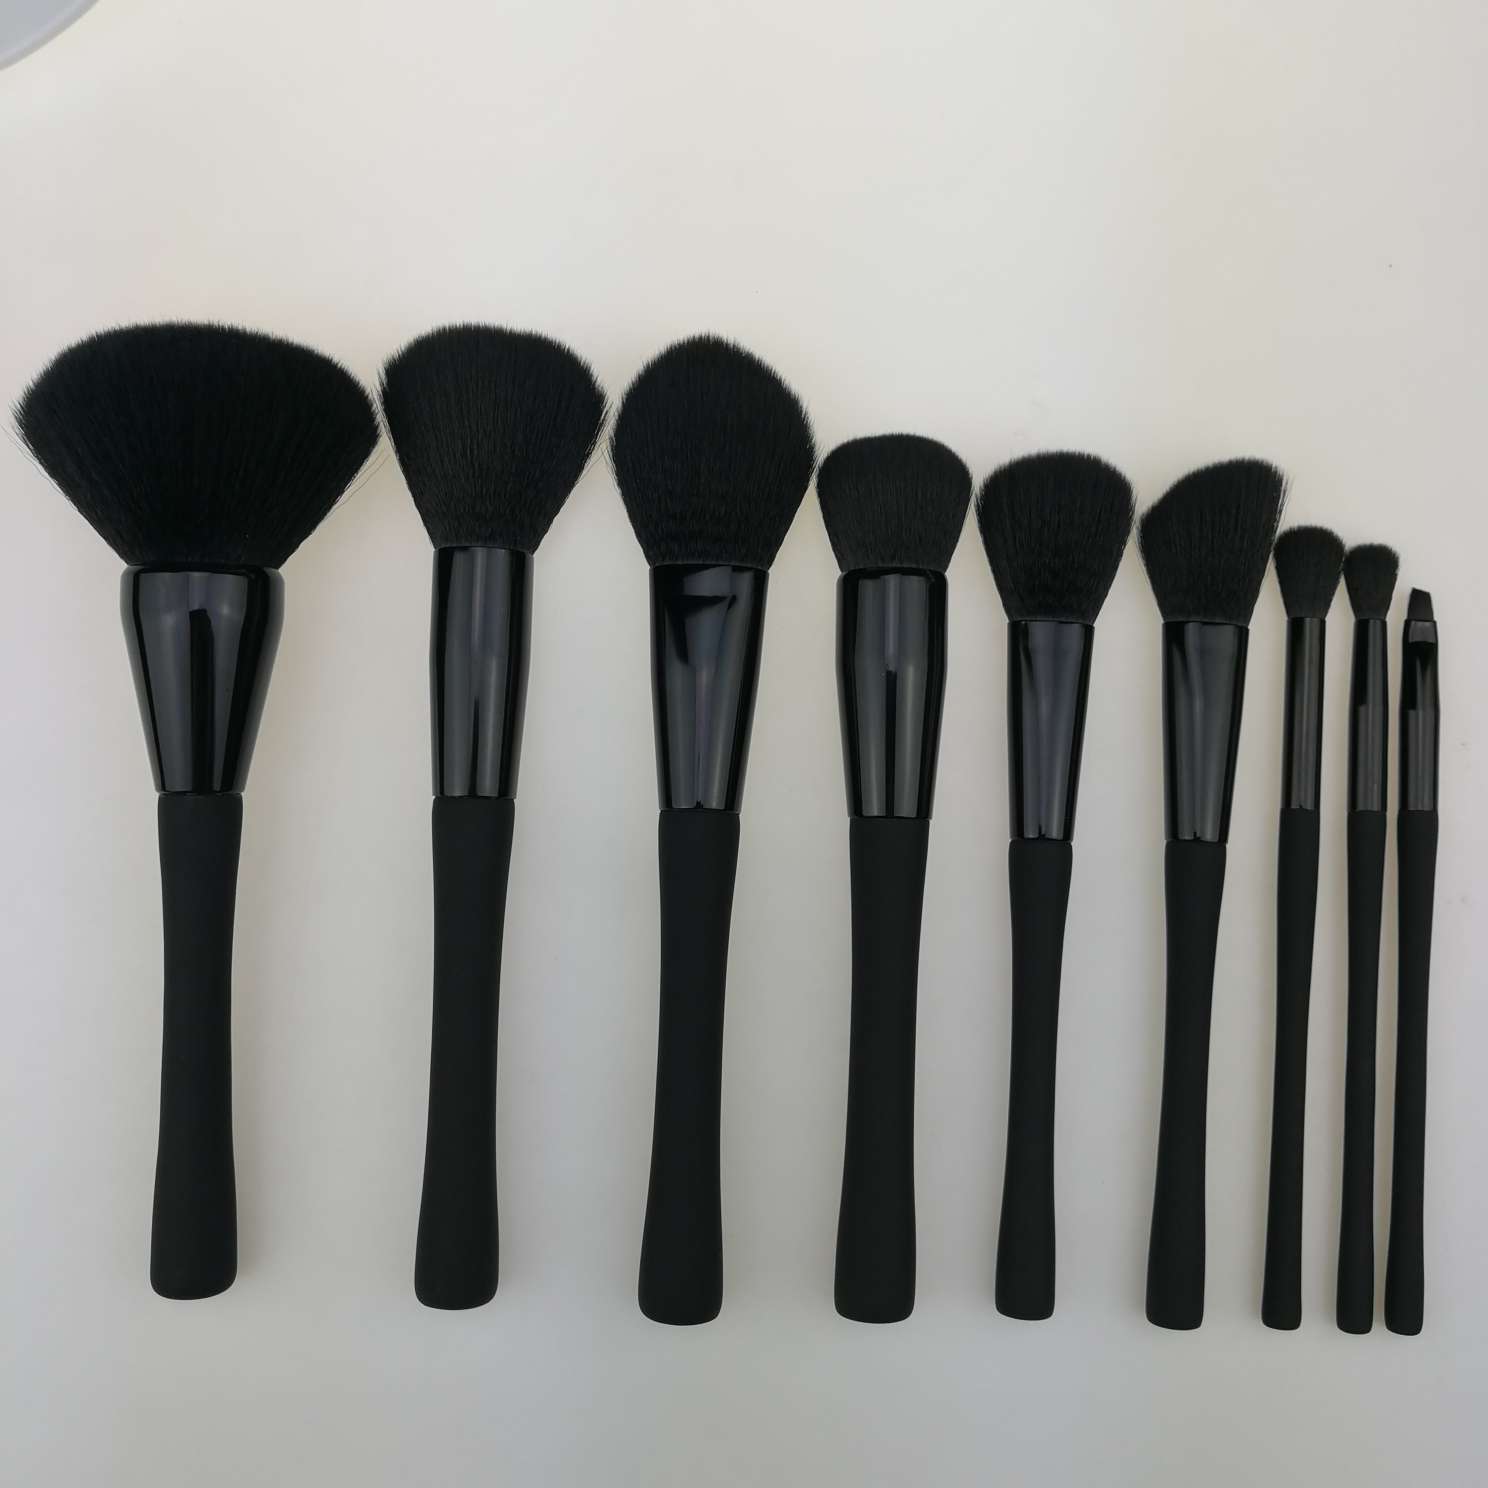 9pcs Private laebl rubber oil handle makeup brush set manufacturer